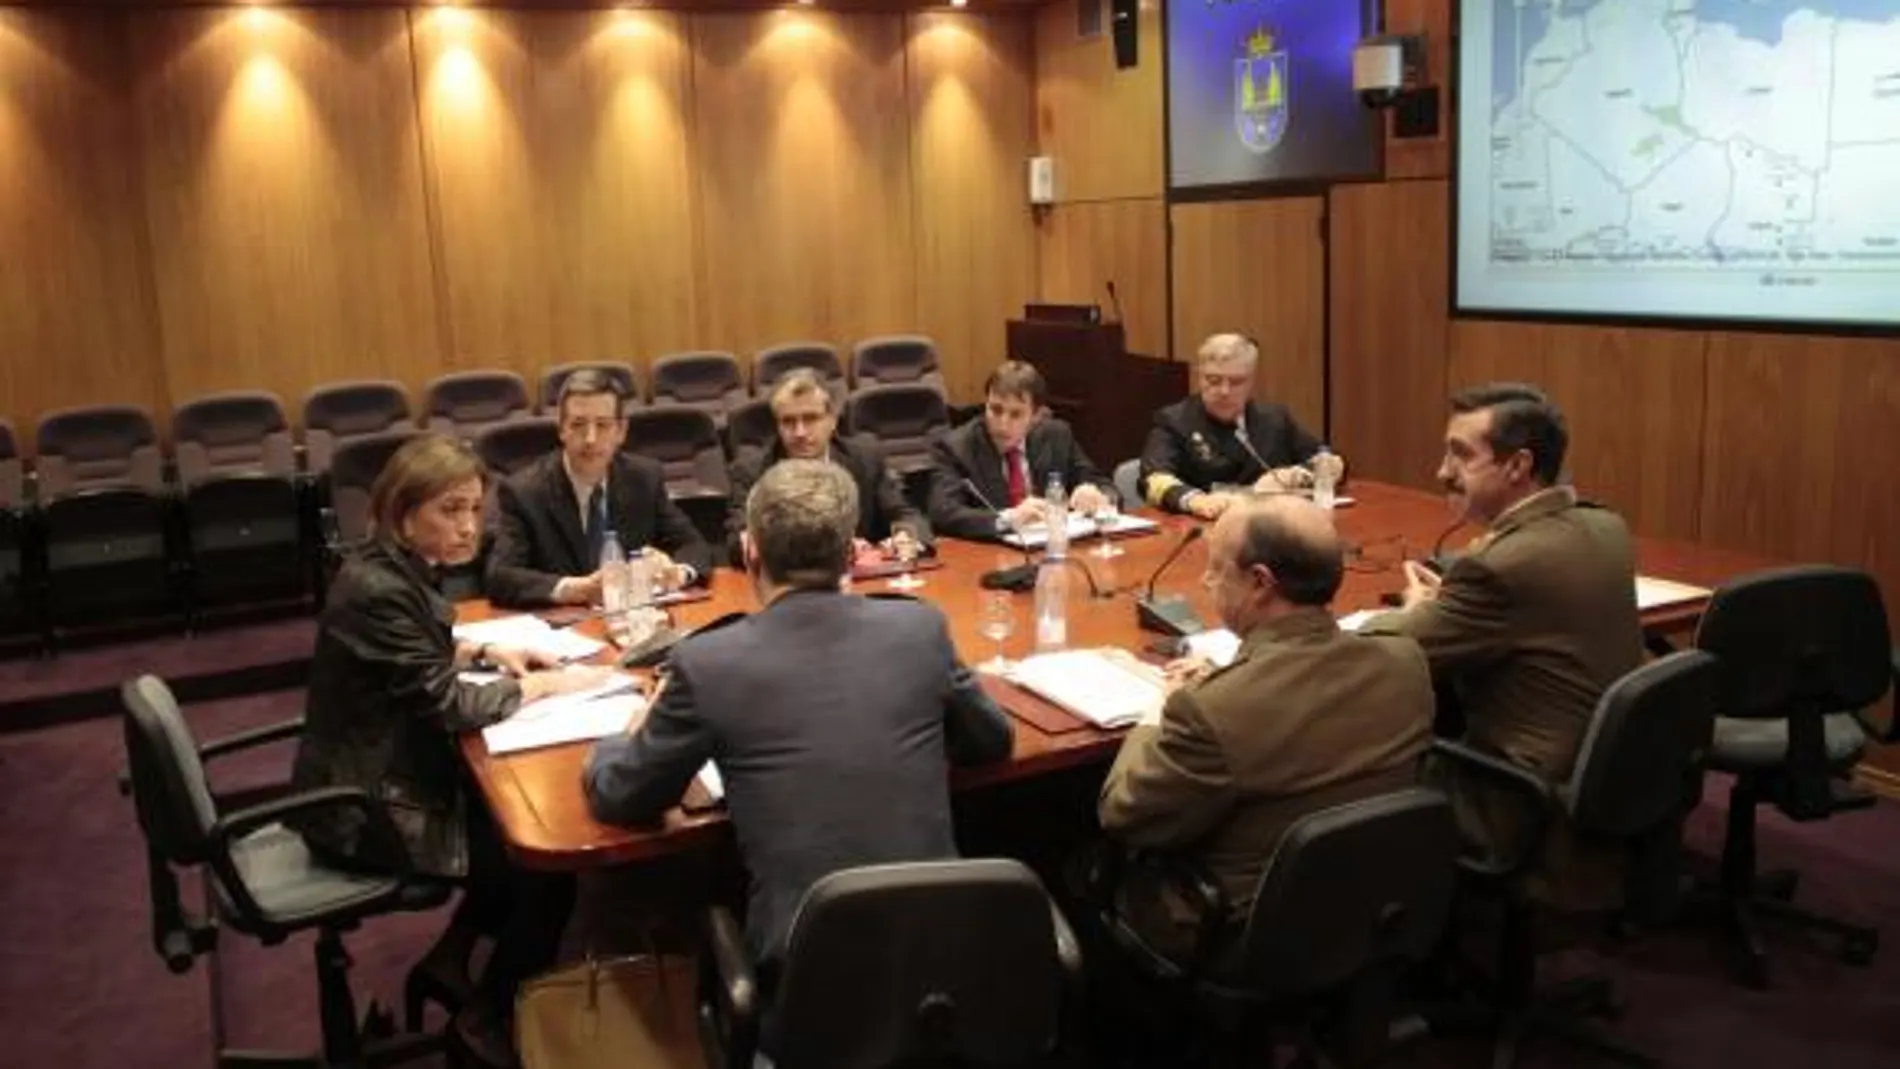 La ministra de Defensa, Carme Chacón, ha presidido esta tarde una reunión en el Estado Mayor de la Defensa para coordinar el despliegue militar español en Libia,